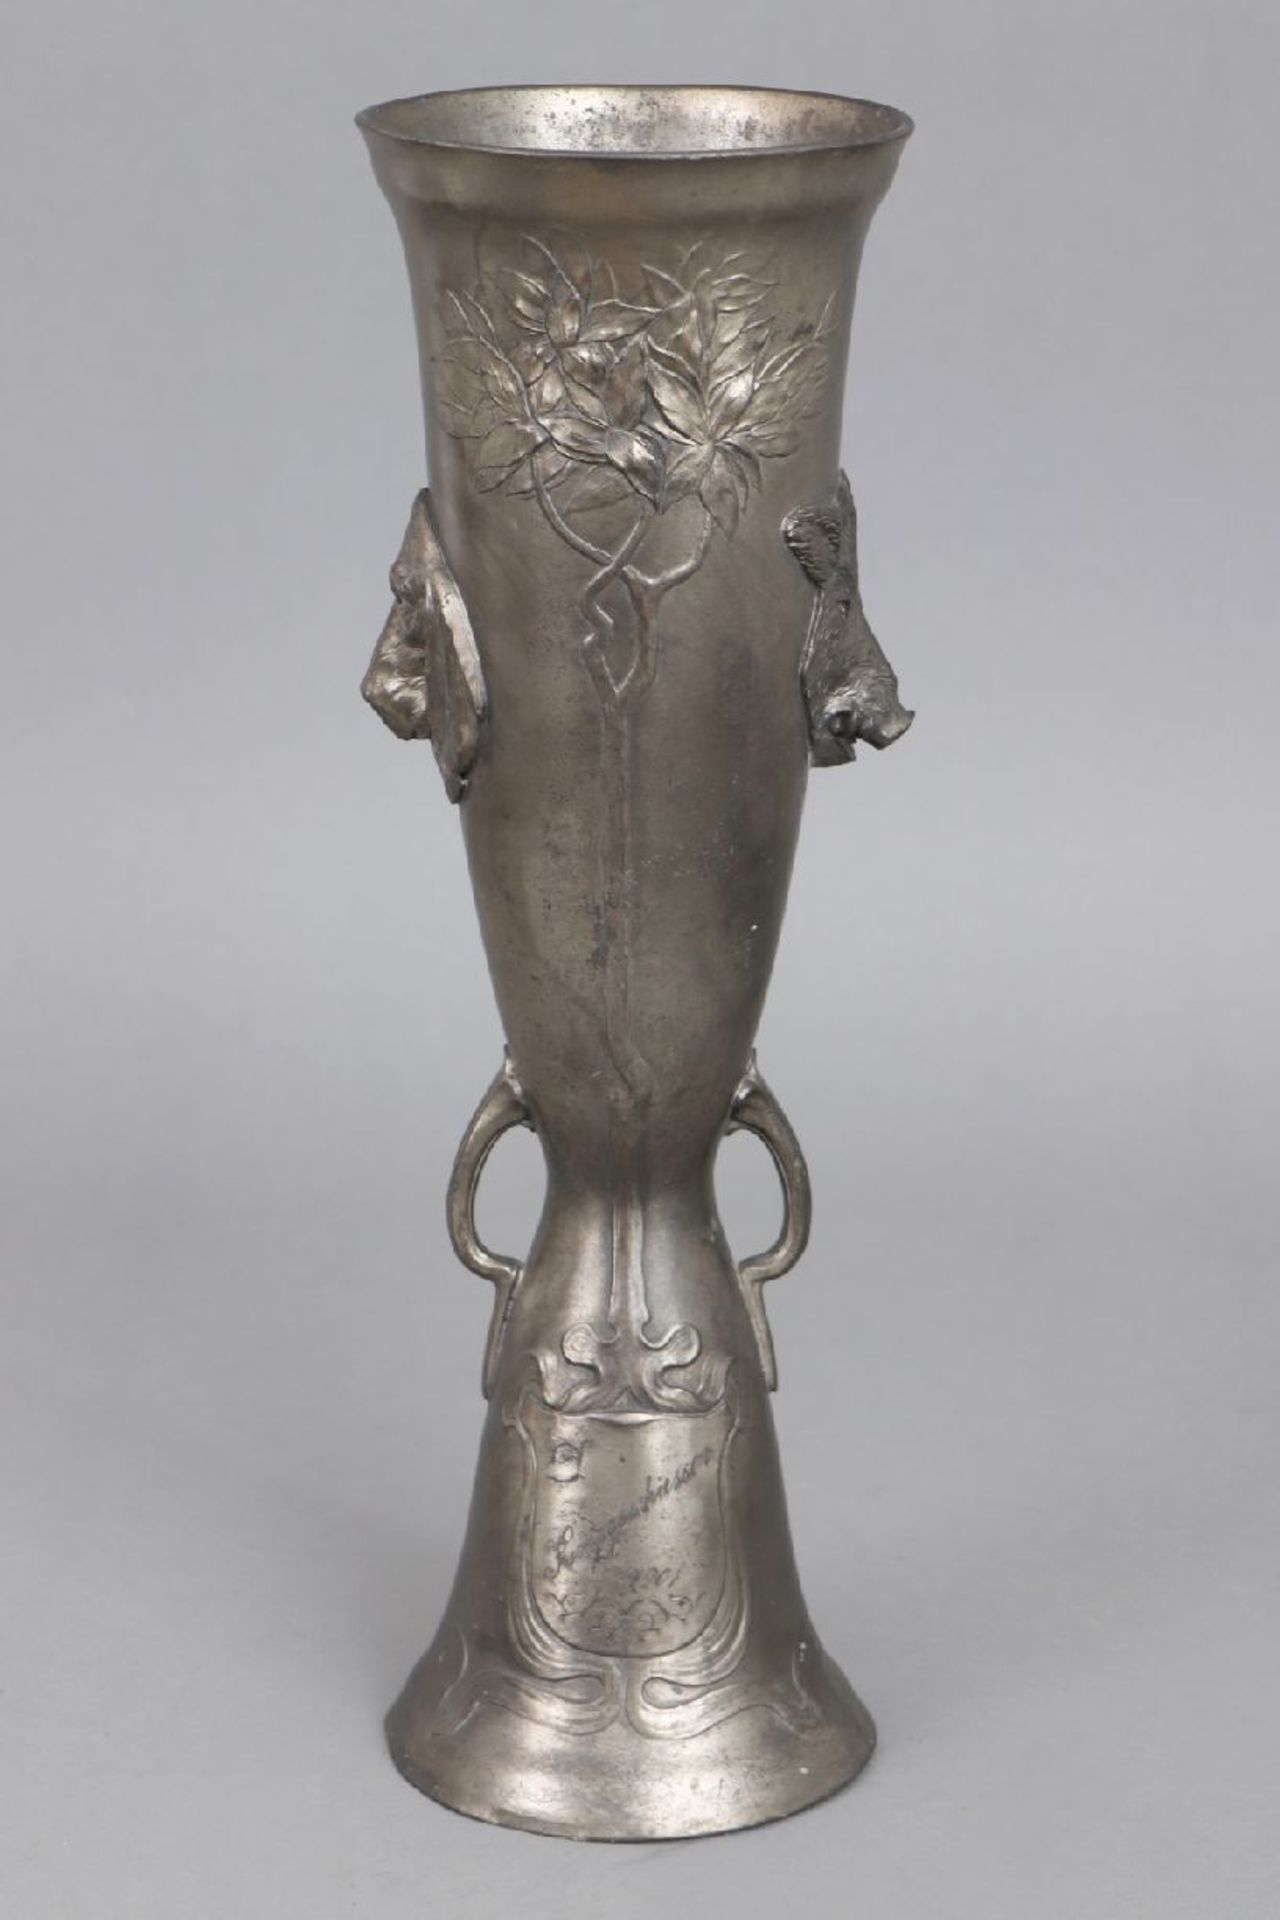 Jugendstil Zinn-Pokal ¨Königsschießen 1901¨Kayser-Zinn, Modell ¨4330¨, um 1900, Reliefdekor,